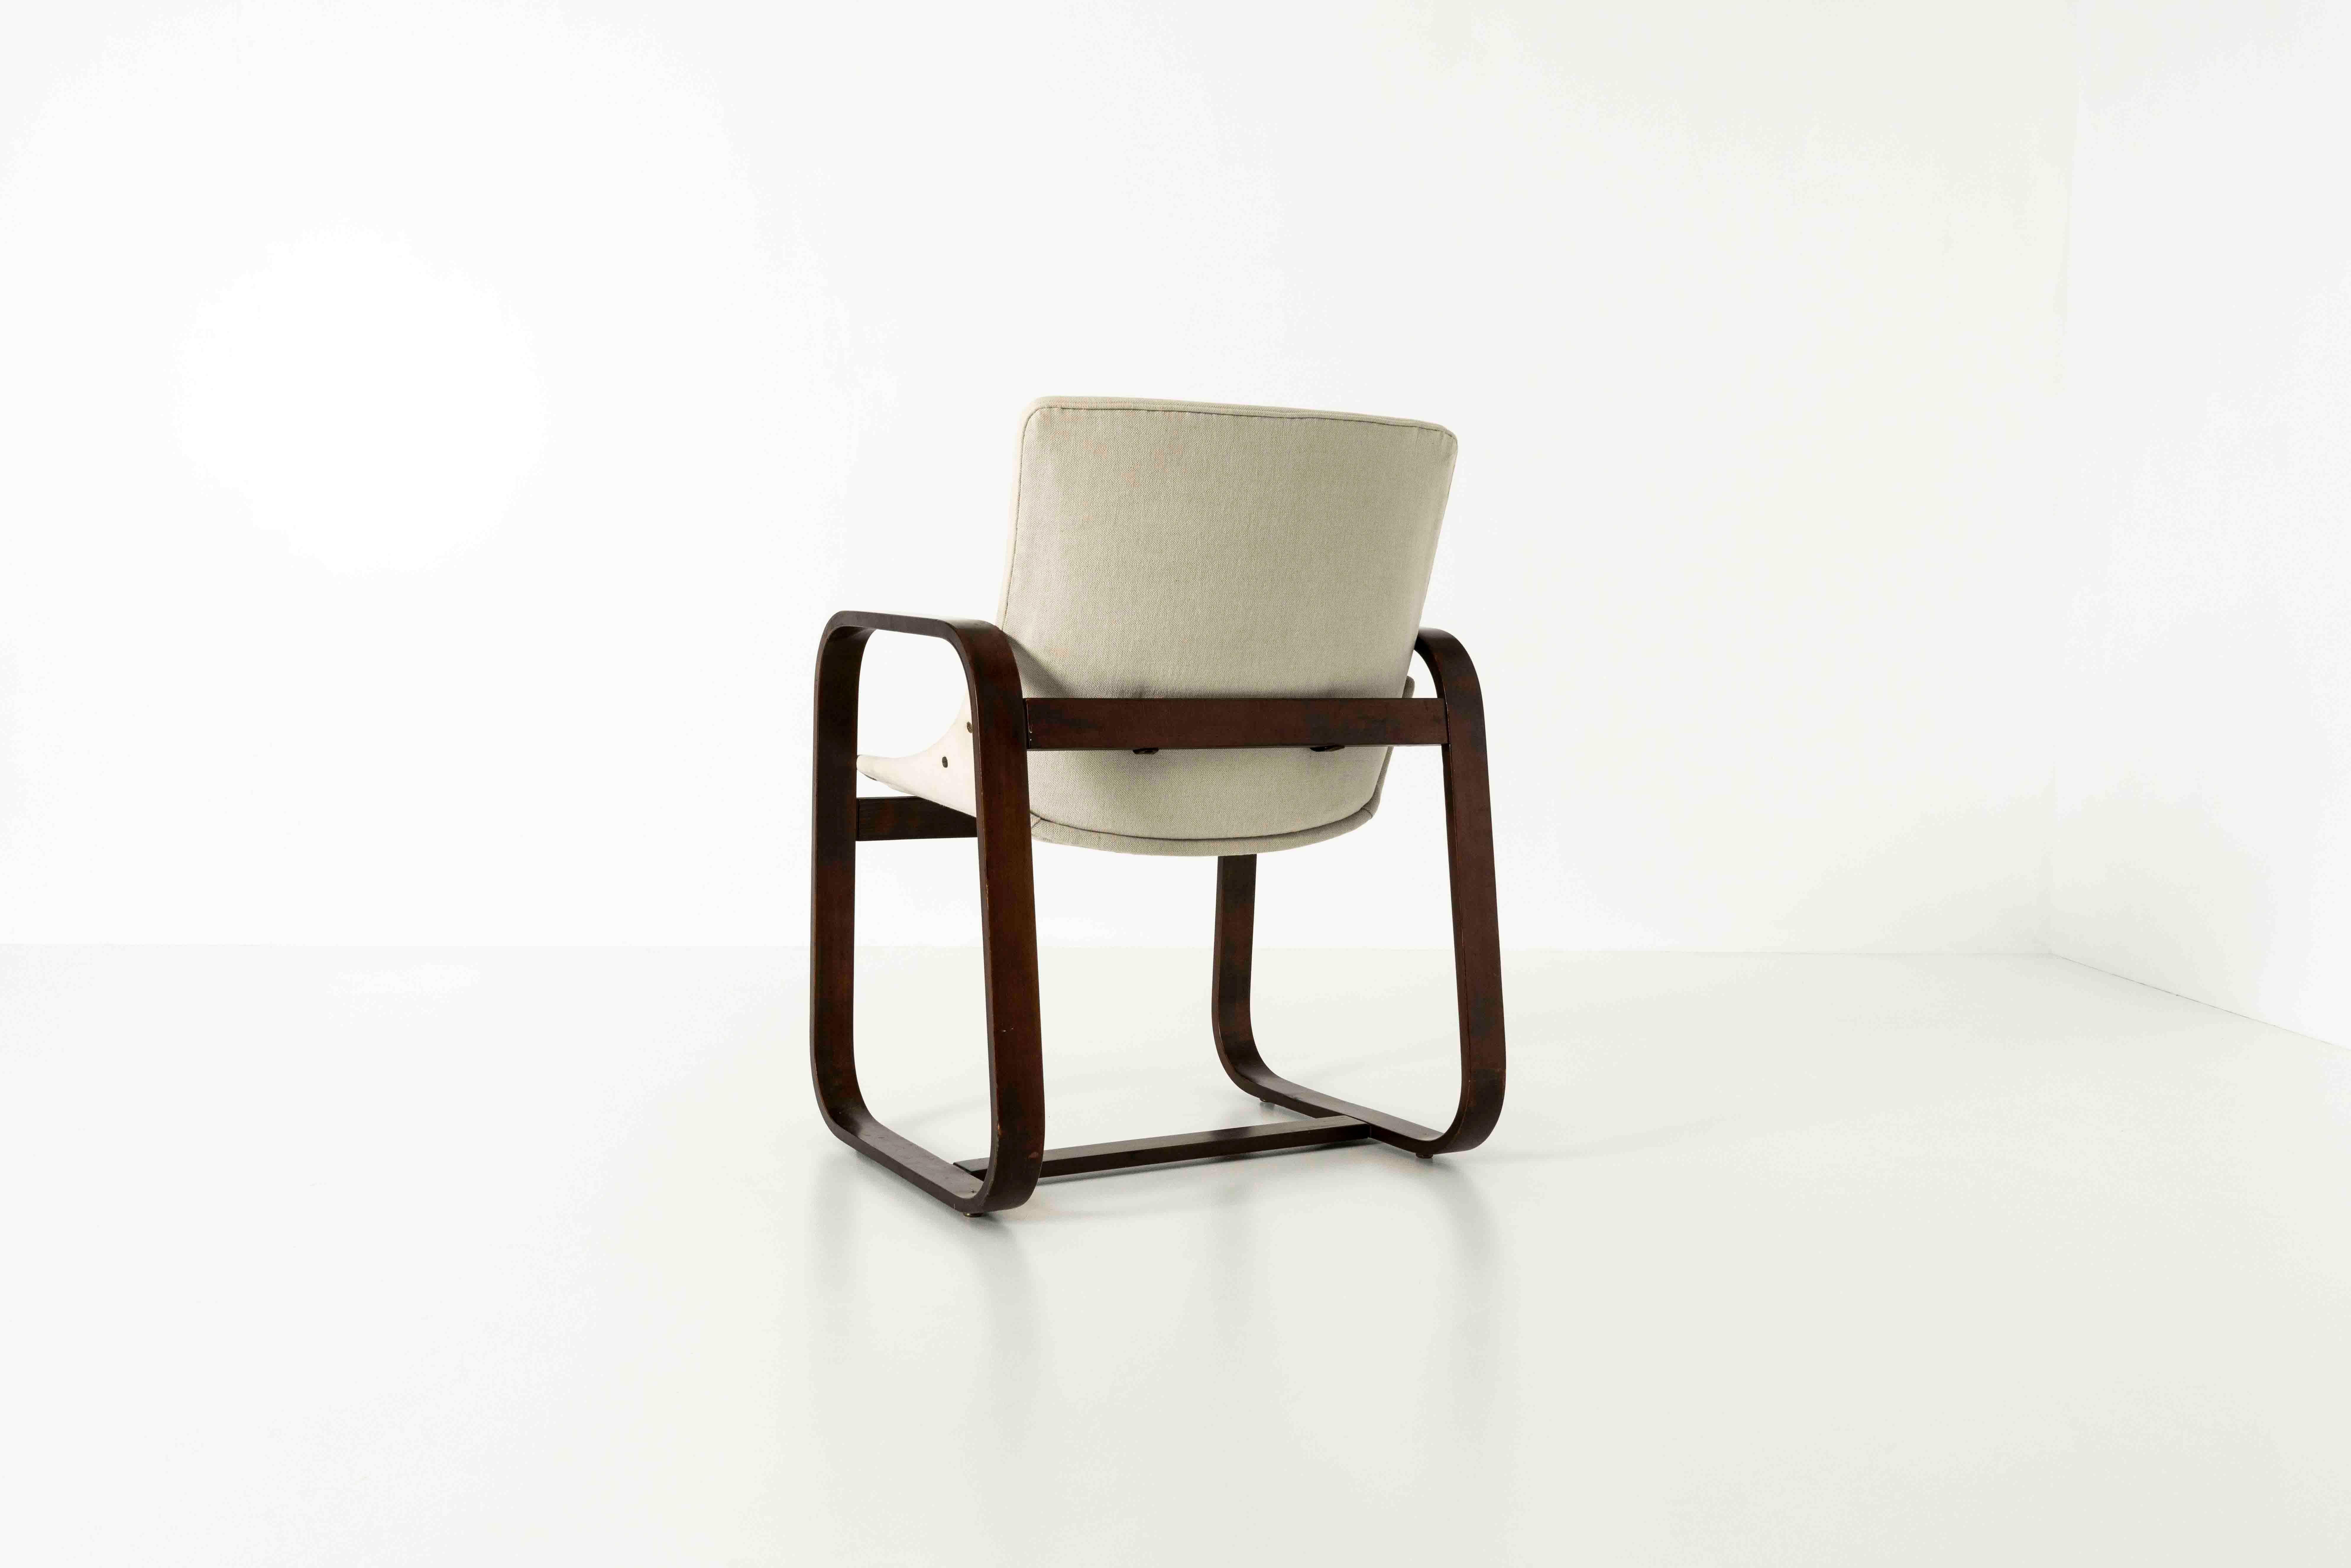 Rare fauteuil de Giuseppe Pagano Pogatschnig et Gino Maggioni, vers les années 1940. La base se compose de deux côtés de forme carrée et des pieds de la chaise. Ce design est très reconnaissable aux chaises conçues par Giuseppe Pagano et Gino